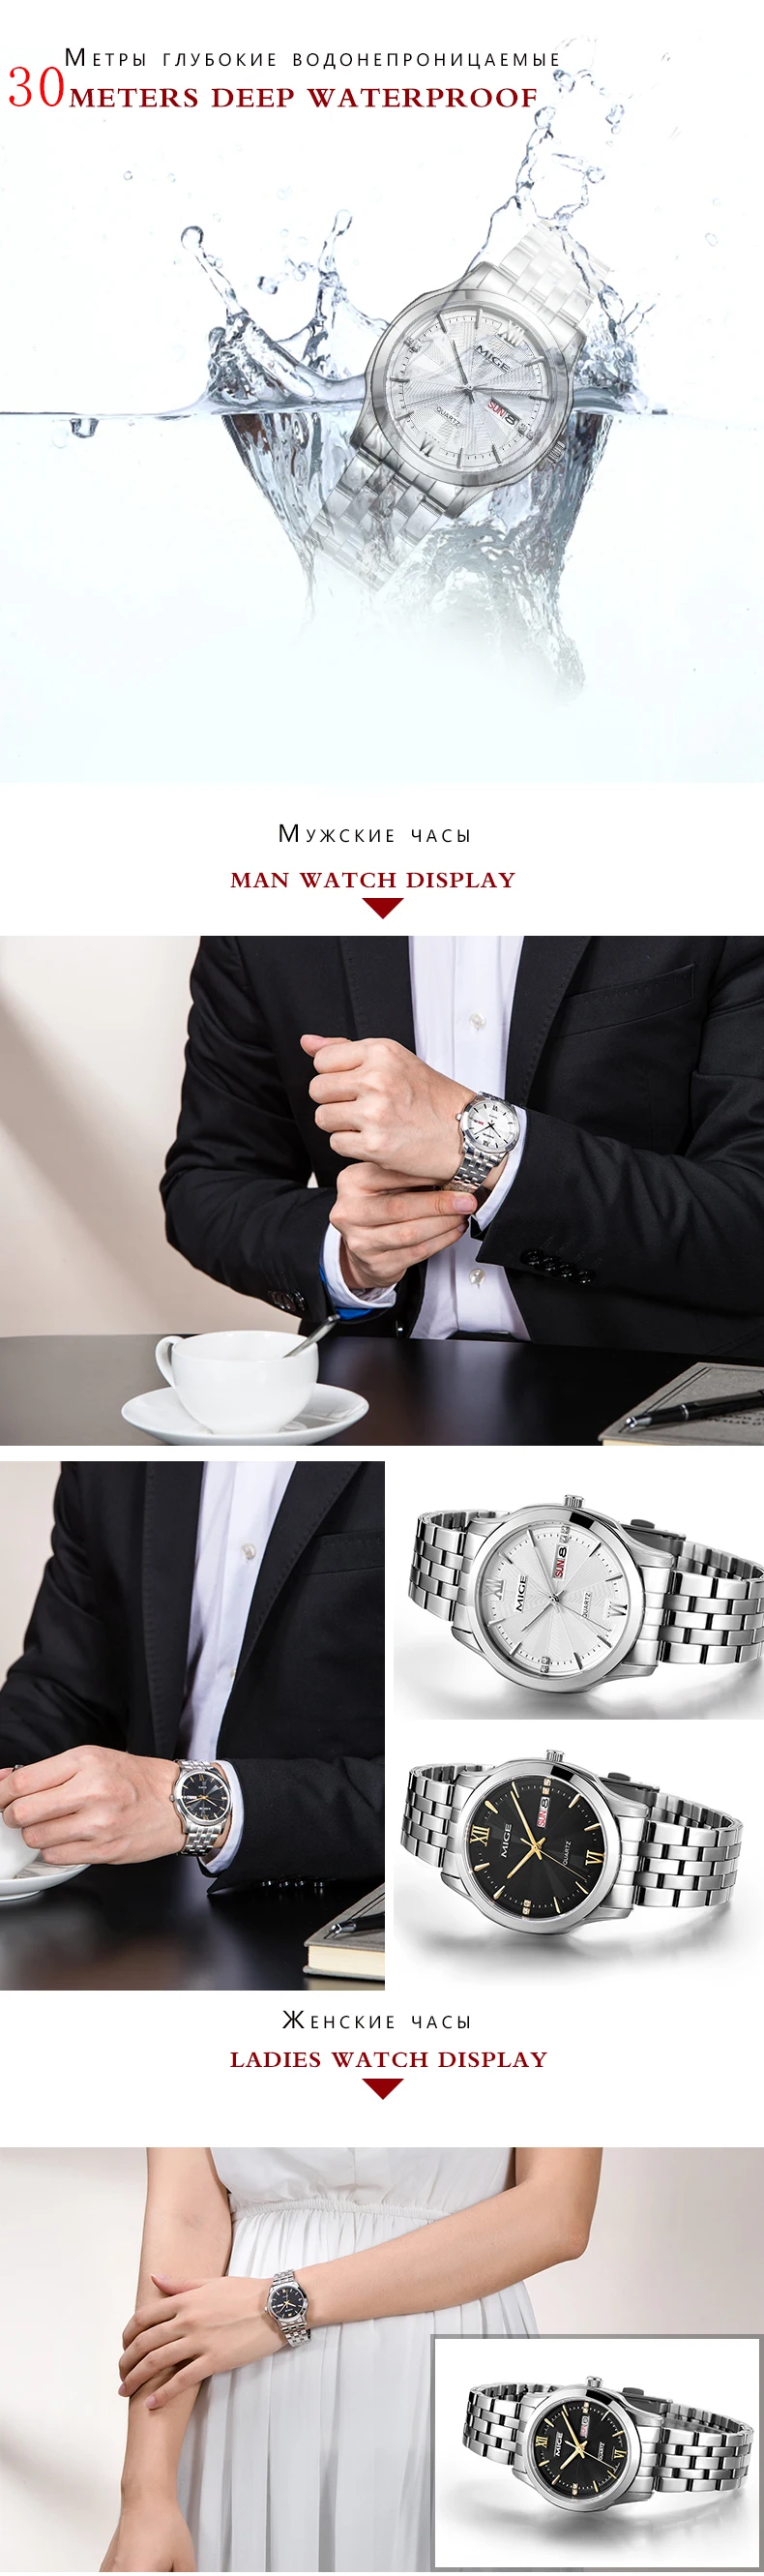 Mige 2017 Горячая продажа Бесплатная доставка Любовные часы черный циферблат стальной ремешок для часов водонепроницаемые мужские часы